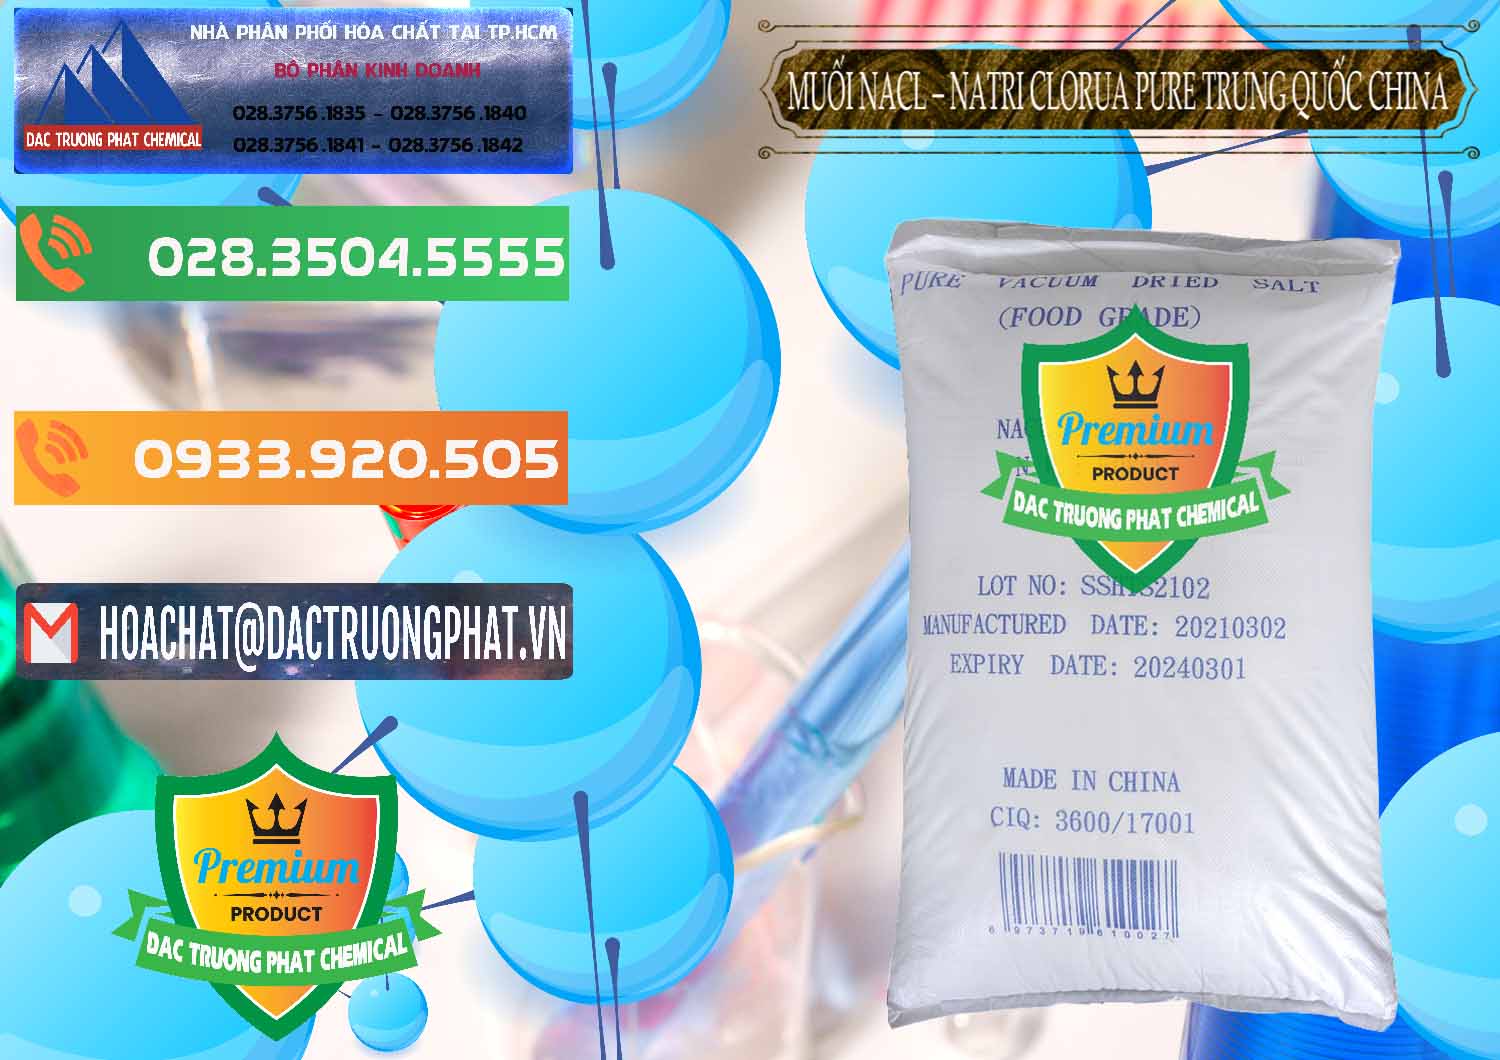 Đơn vị cung cấp ( bán ) Muối NaCL – Sodium Chloride Pure Trung Quốc China - 0230 - Chuyên cung cấp & kinh doanh hóa chất tại TP.HCM - hoachatxulynuoc.com.vn